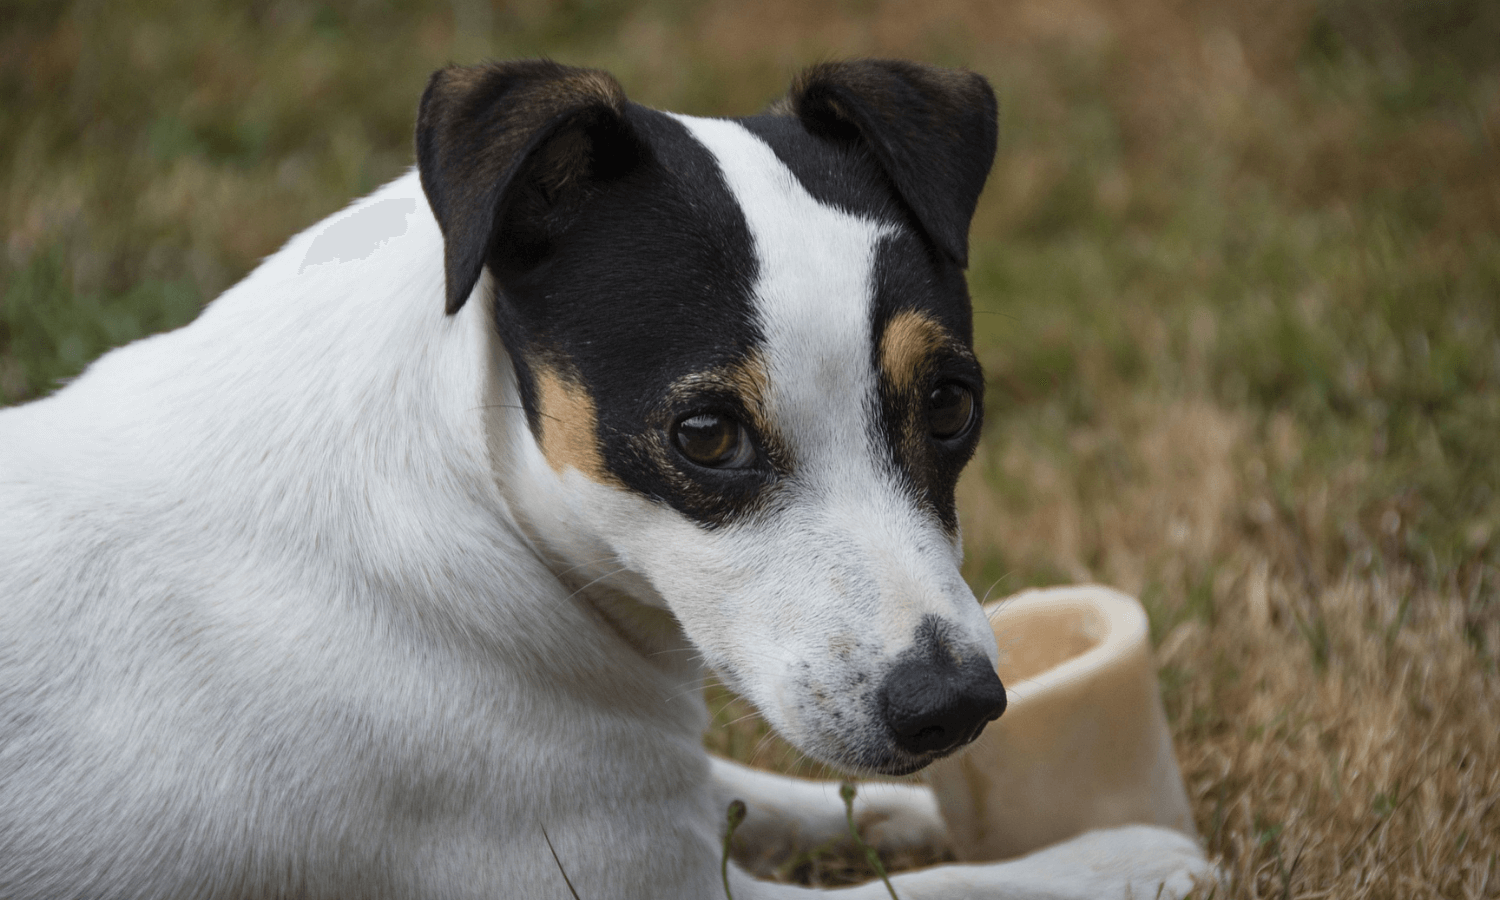 Hunde können rohe Knochen fressen, aber gekochte Knochen dürfen sie nicht. © Pixabay.com